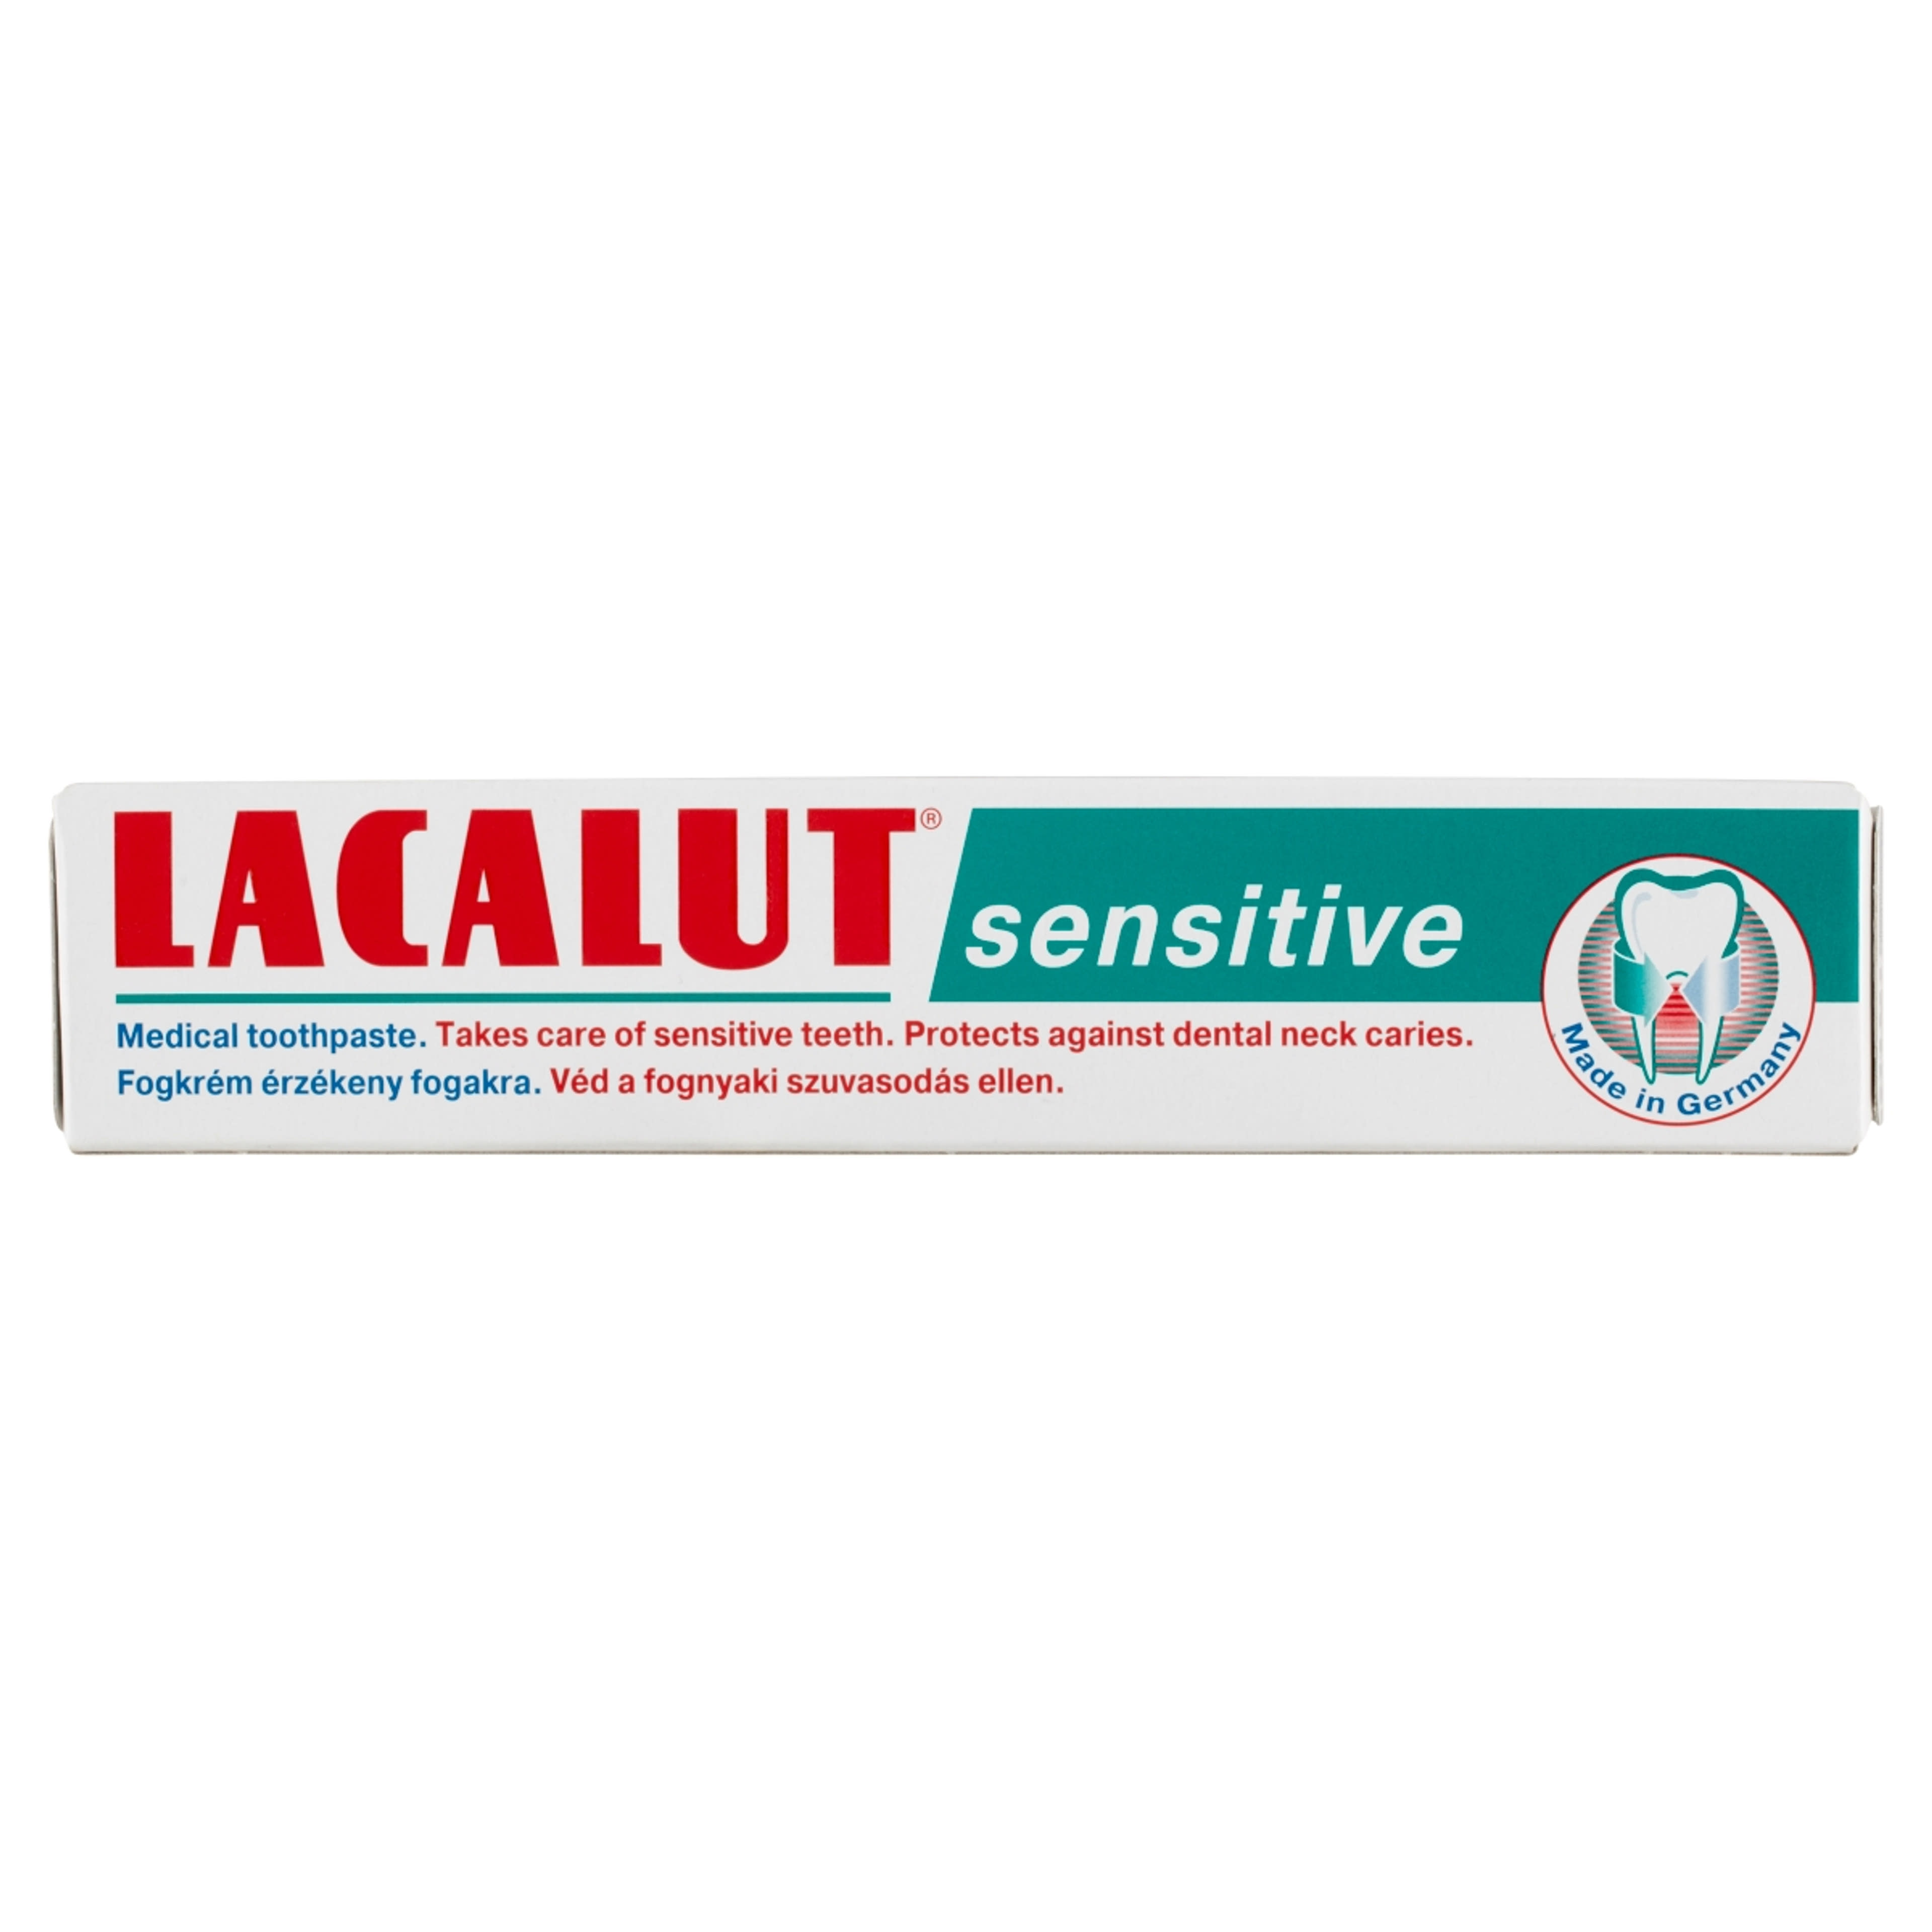 Lacalut Sensitive fogkrém érzékeny fogakra - 75 ml